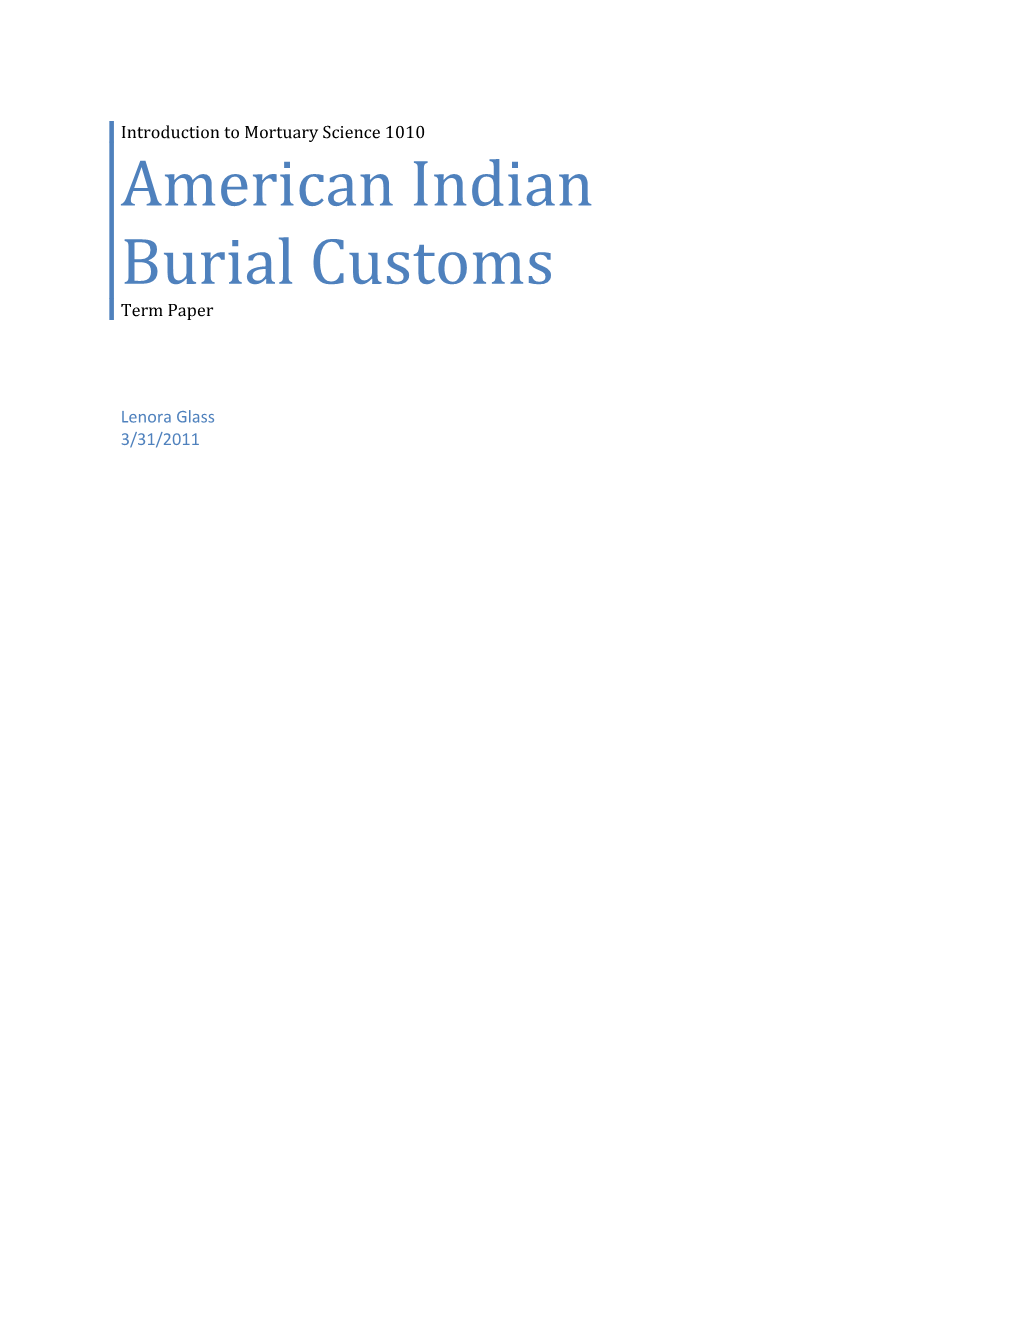 American Indian Burial Customs